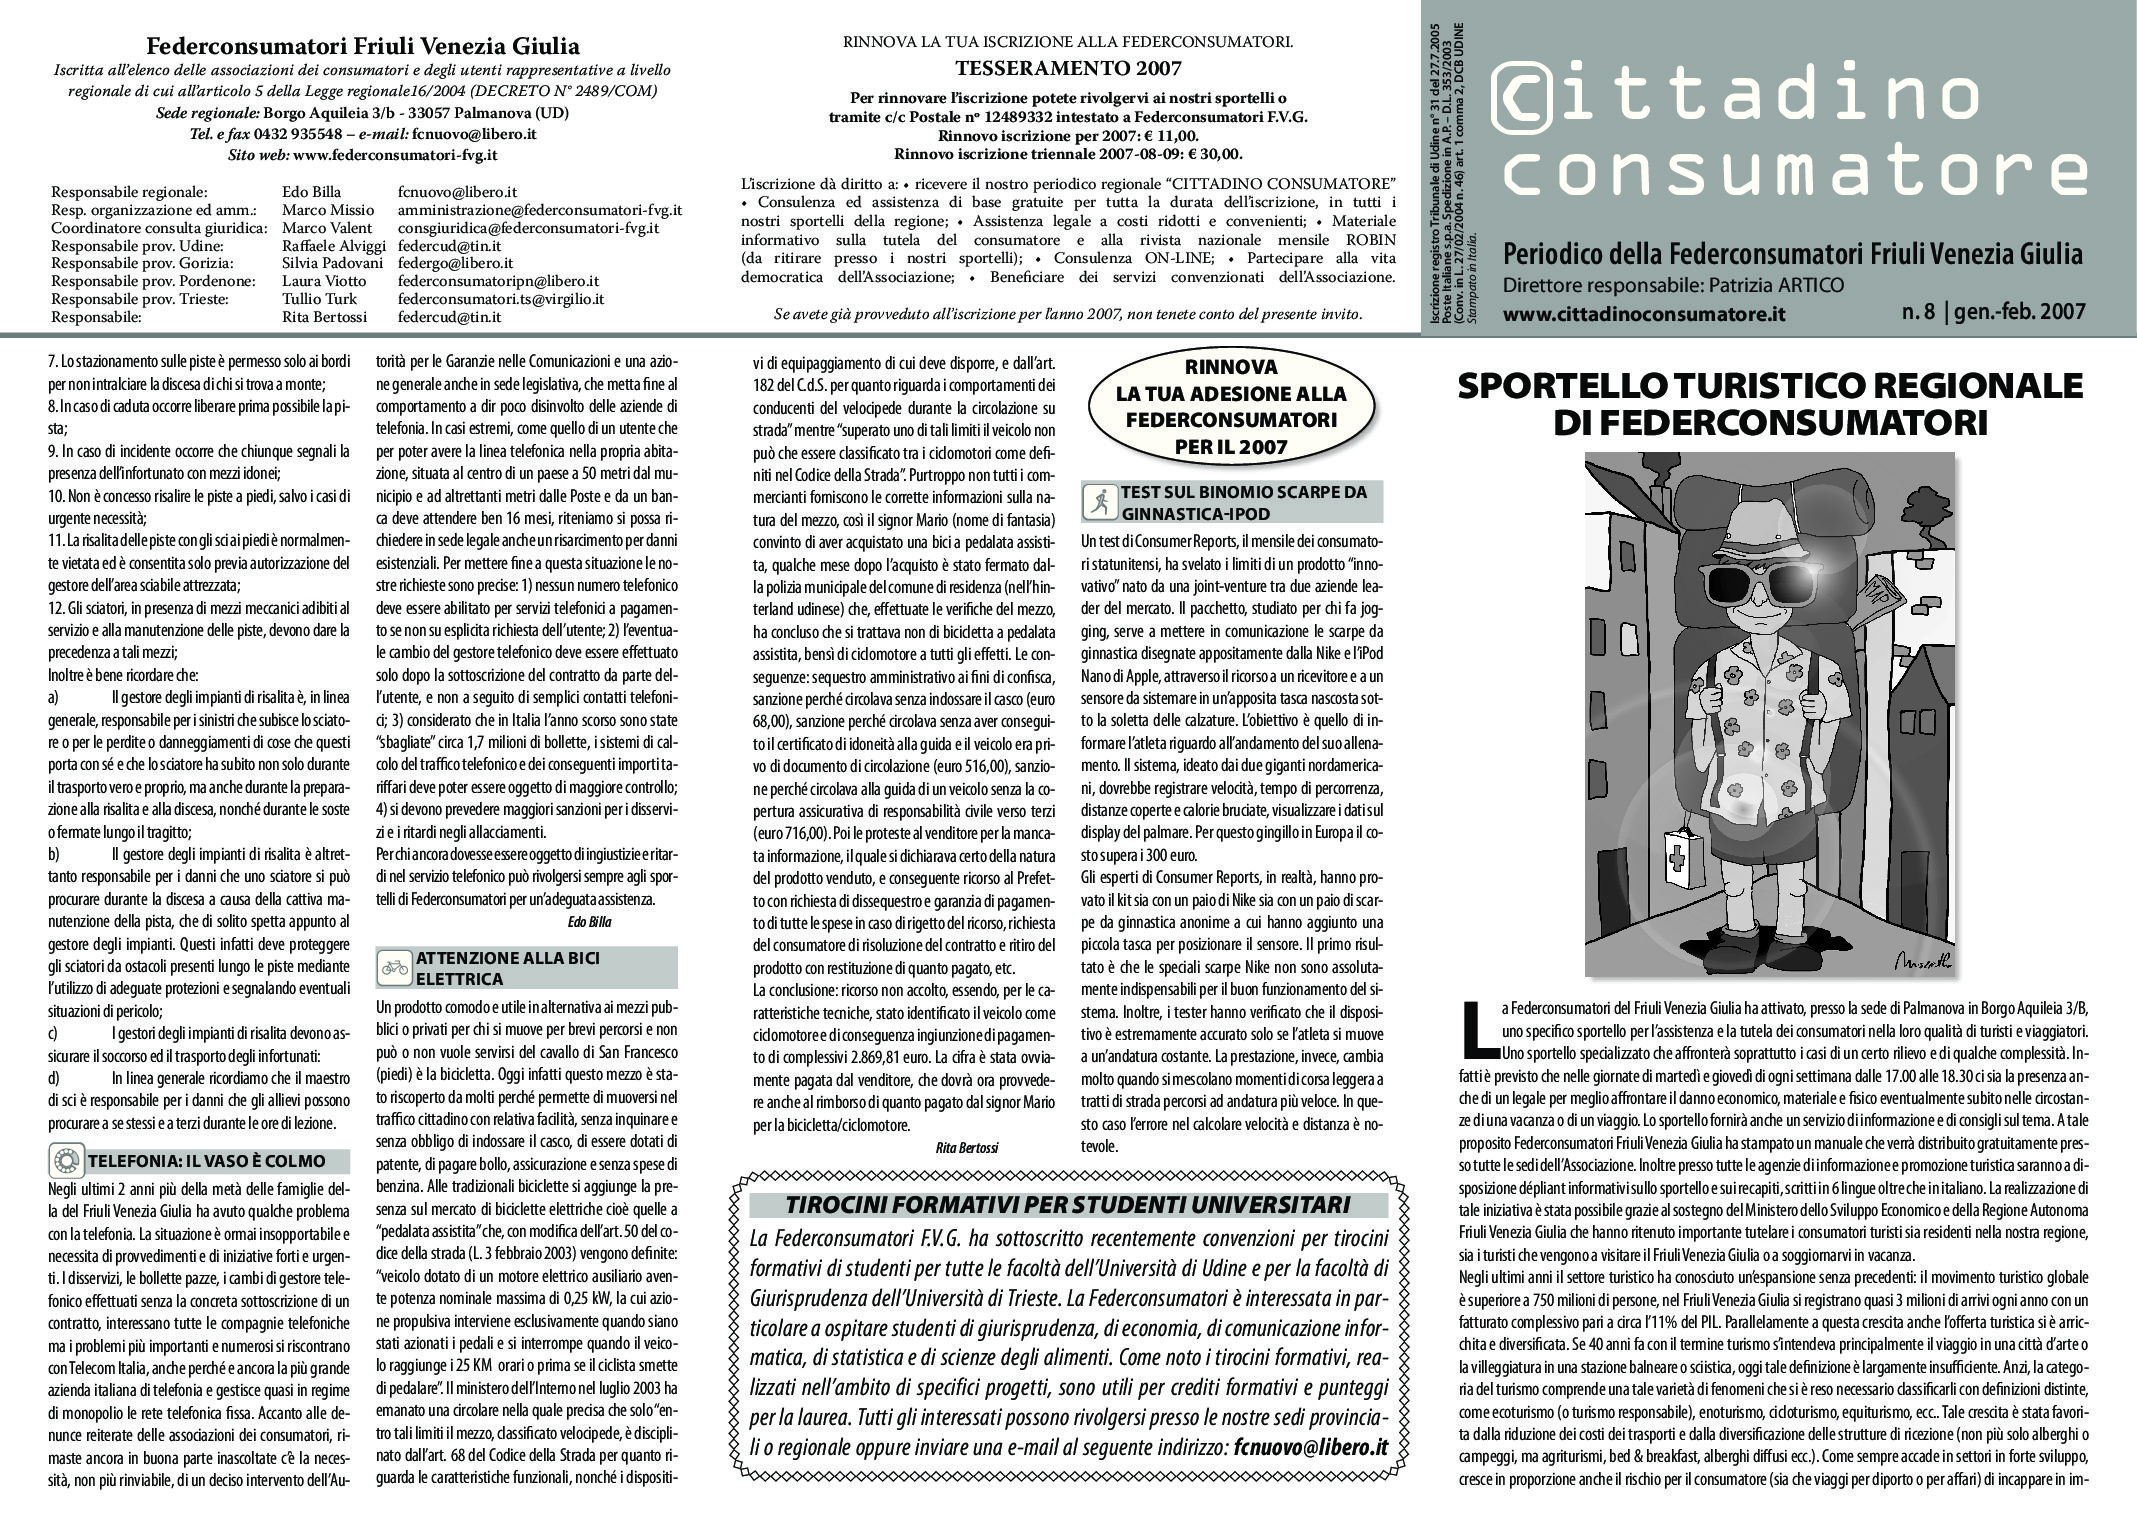 Cittadino Consumatore num. 8 (gen.-feb. 2007)